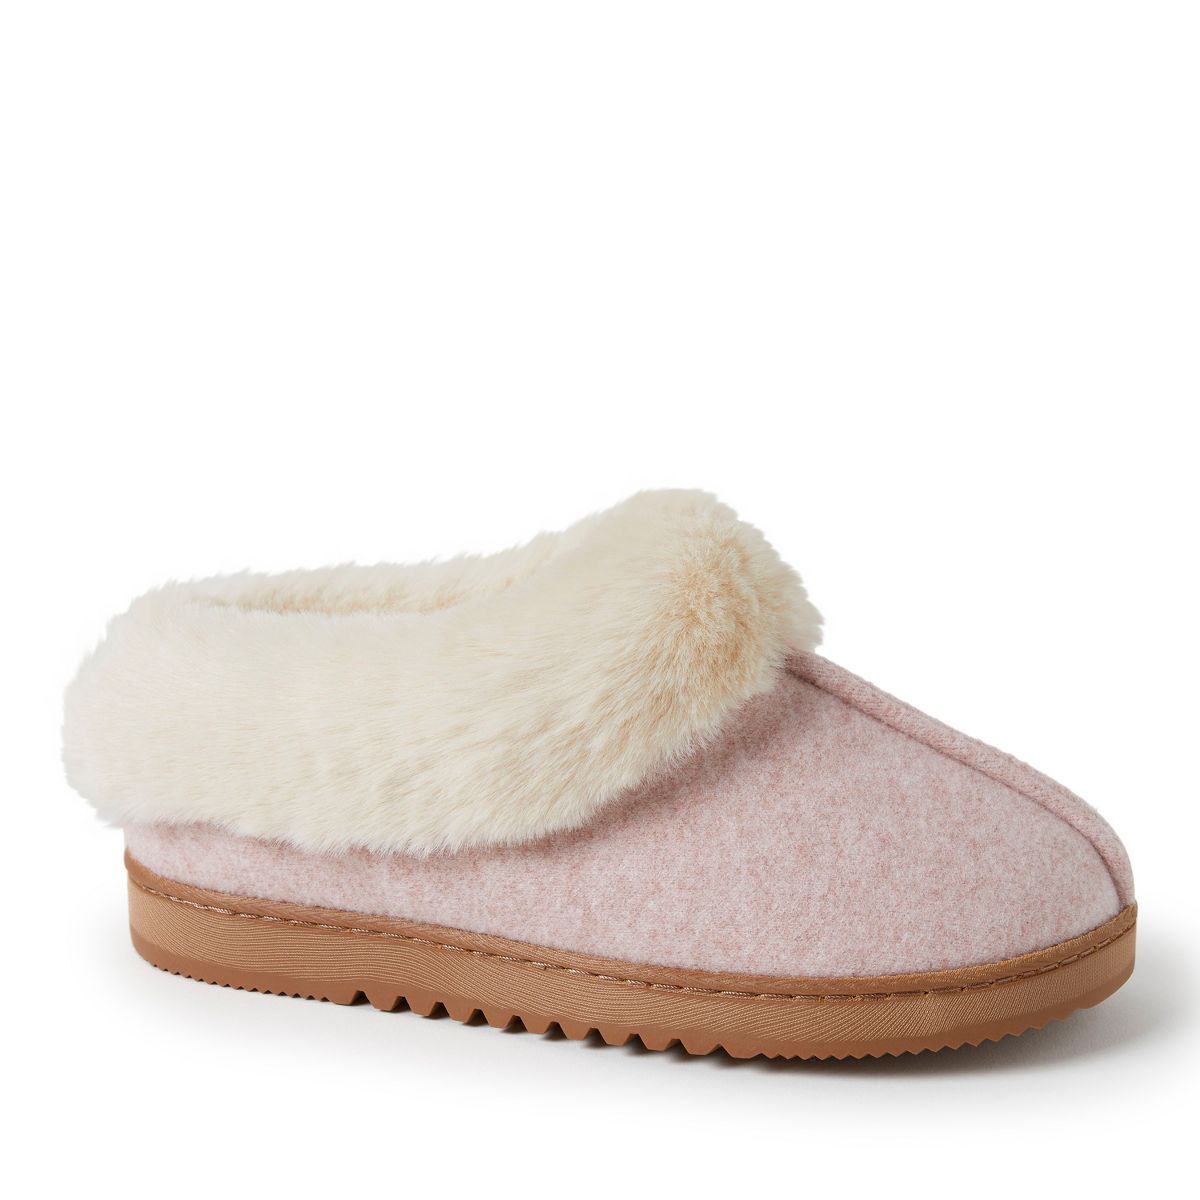 Dearfoams Women's Chloe Soft Knit Clog House Shoe Slippers | Target